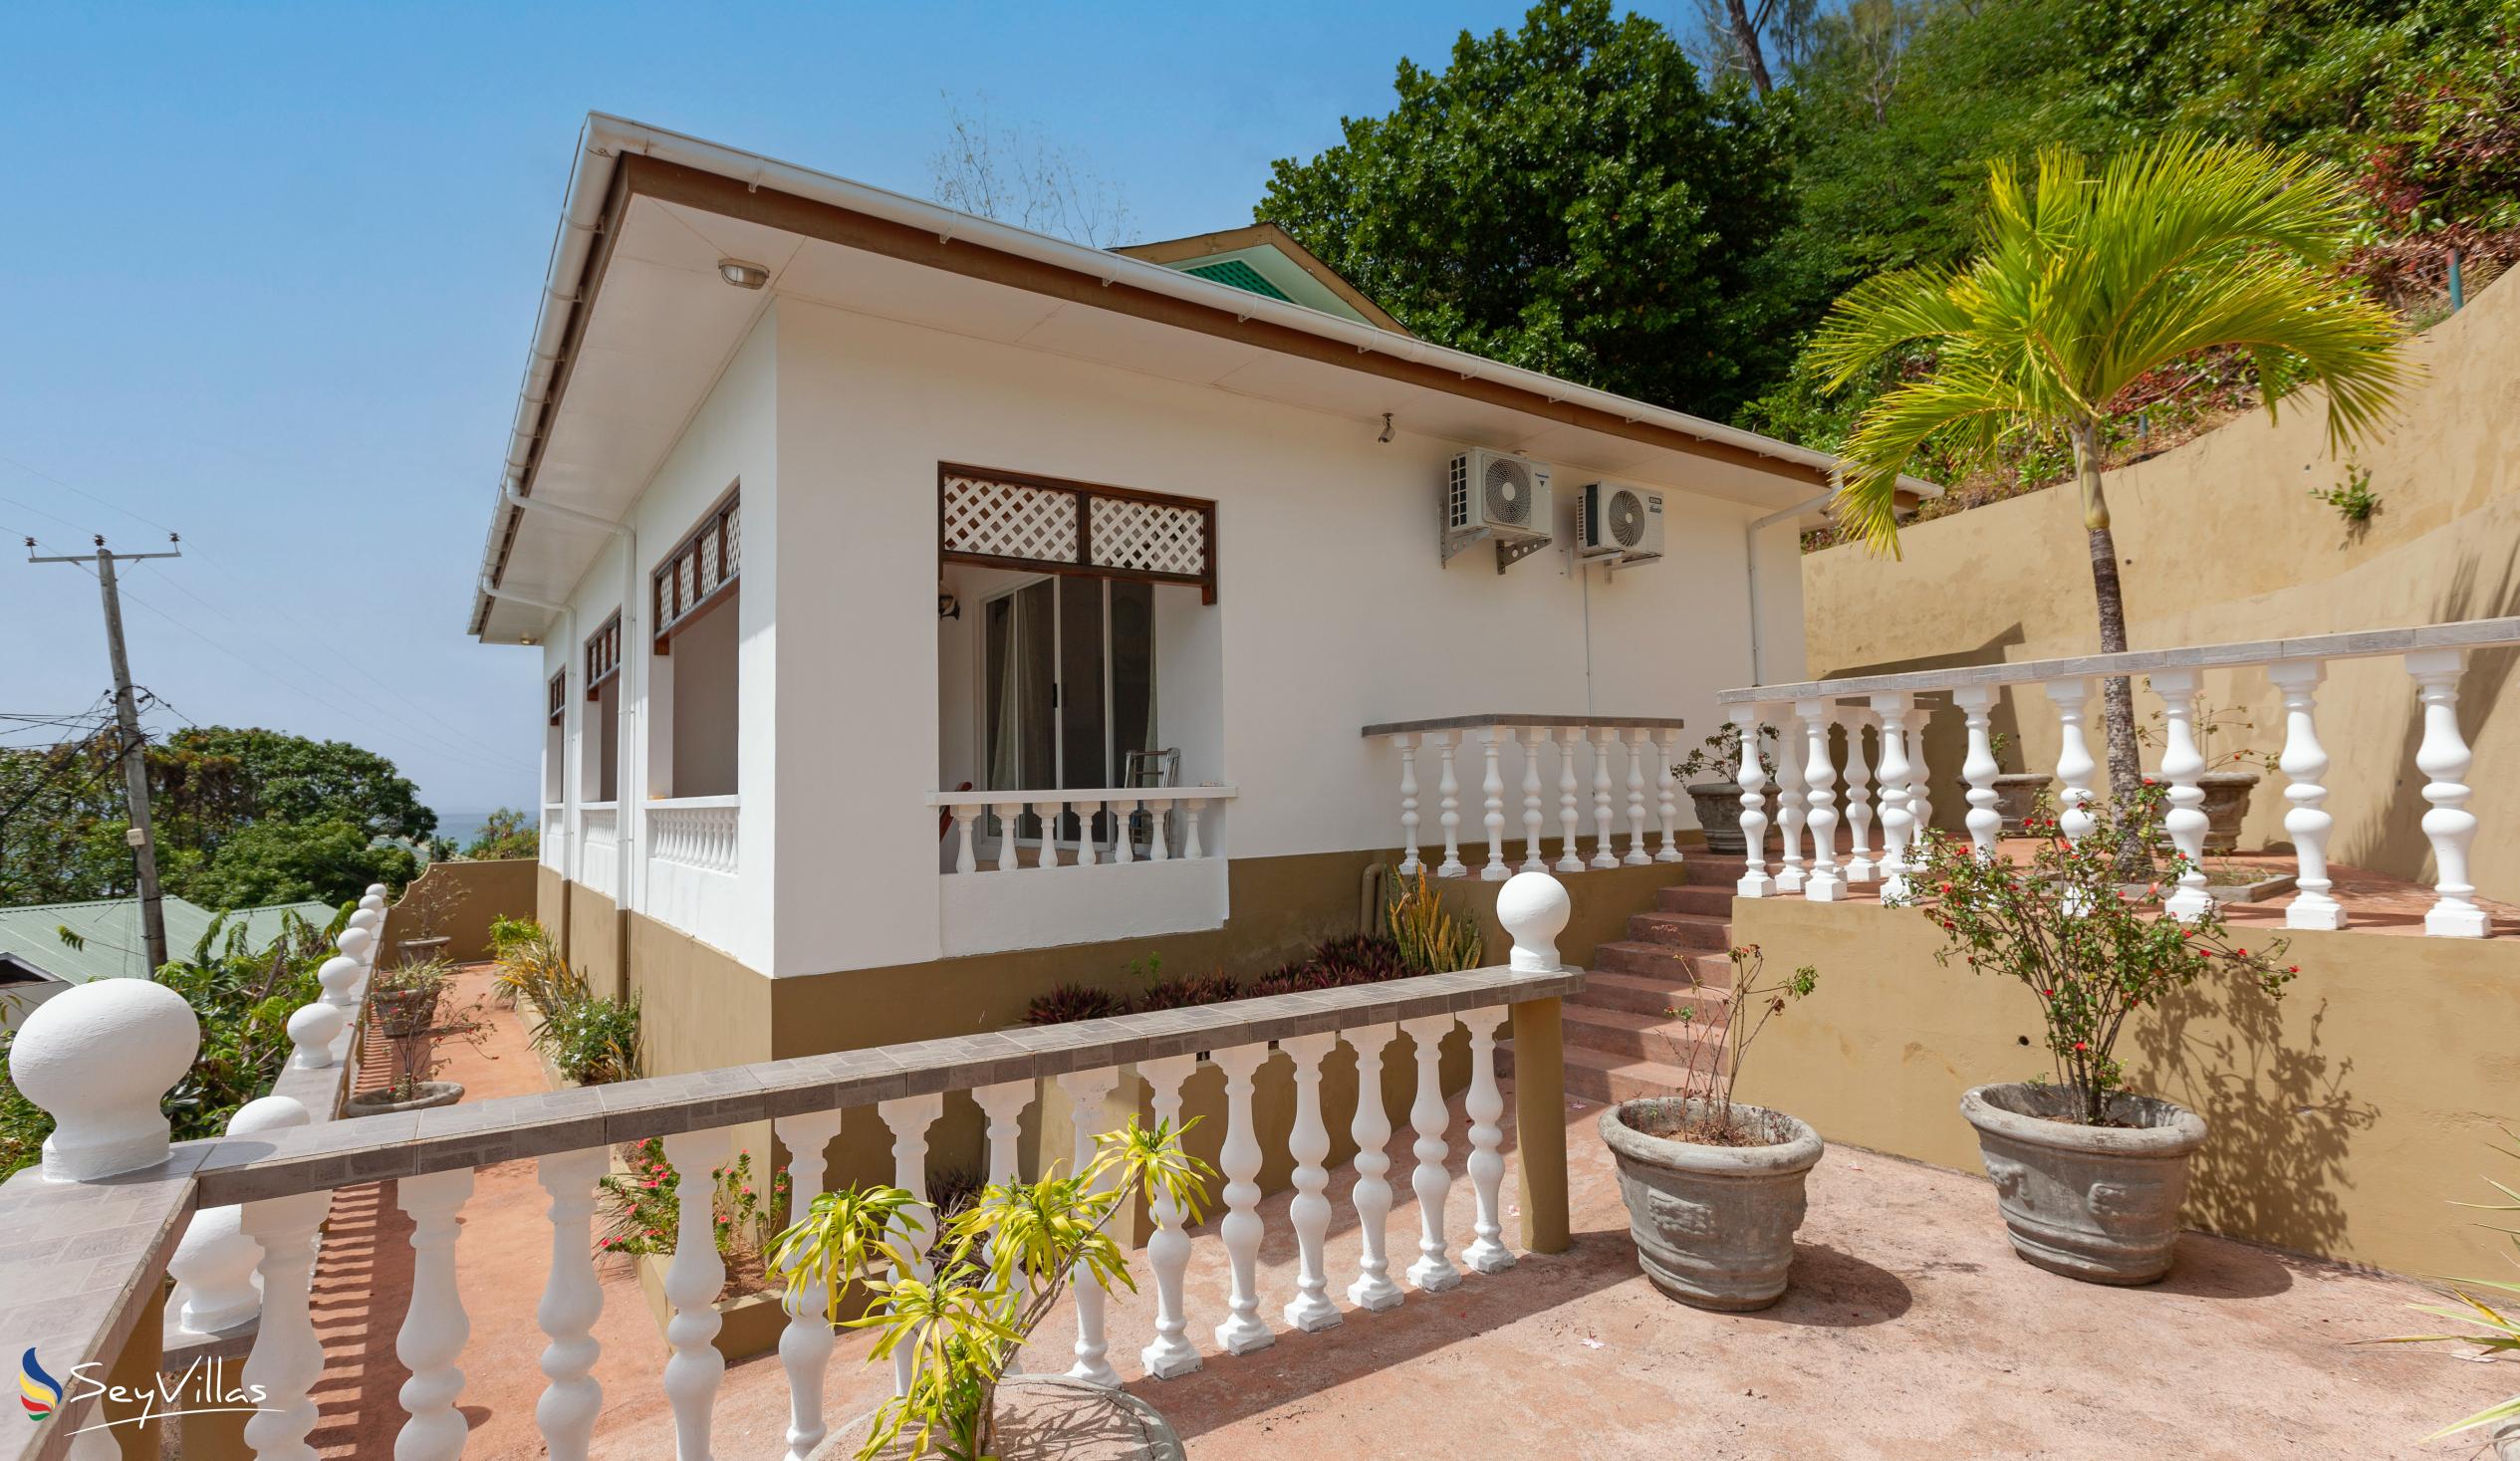 Foto 7: Villa Anse La Blague - Aussenbereich - Praslin (Seychellen)